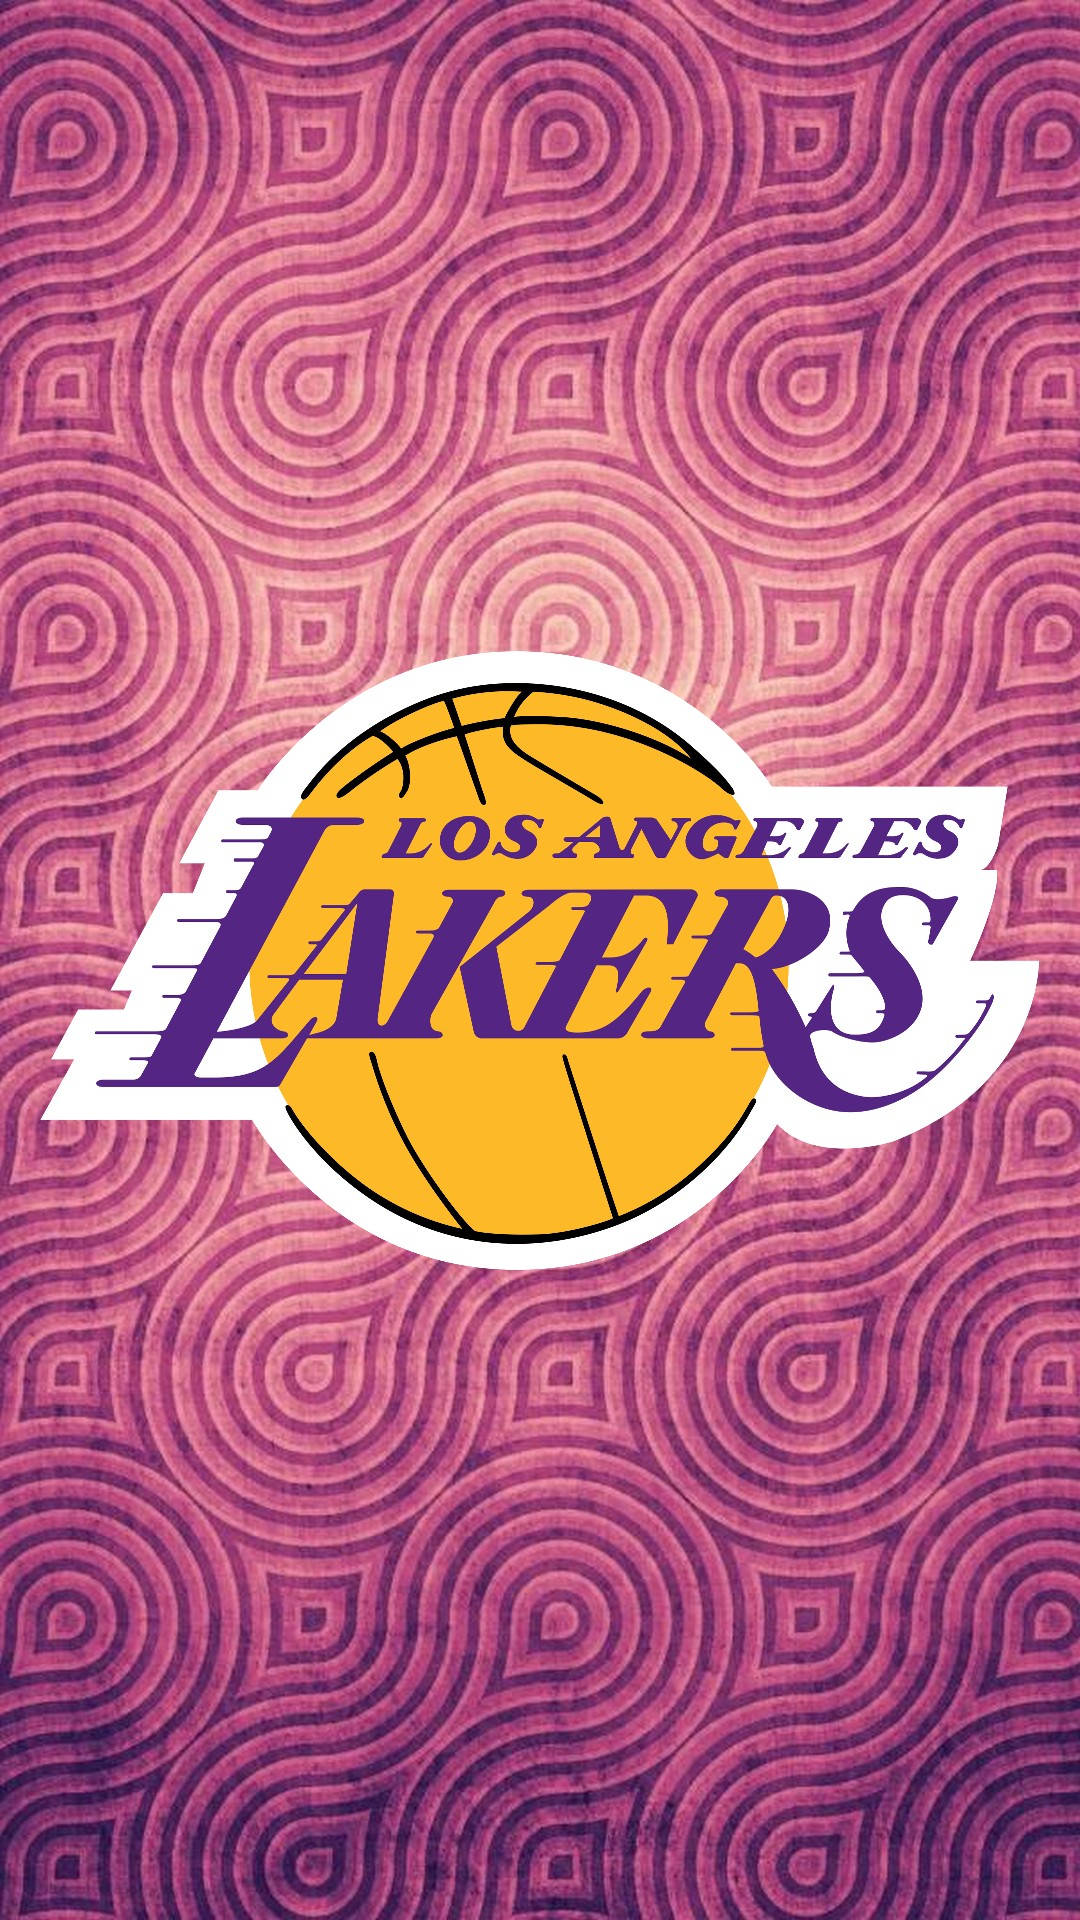 Vis din kærlighed for Lakers med en iPhone-baggrund. Wallpaper